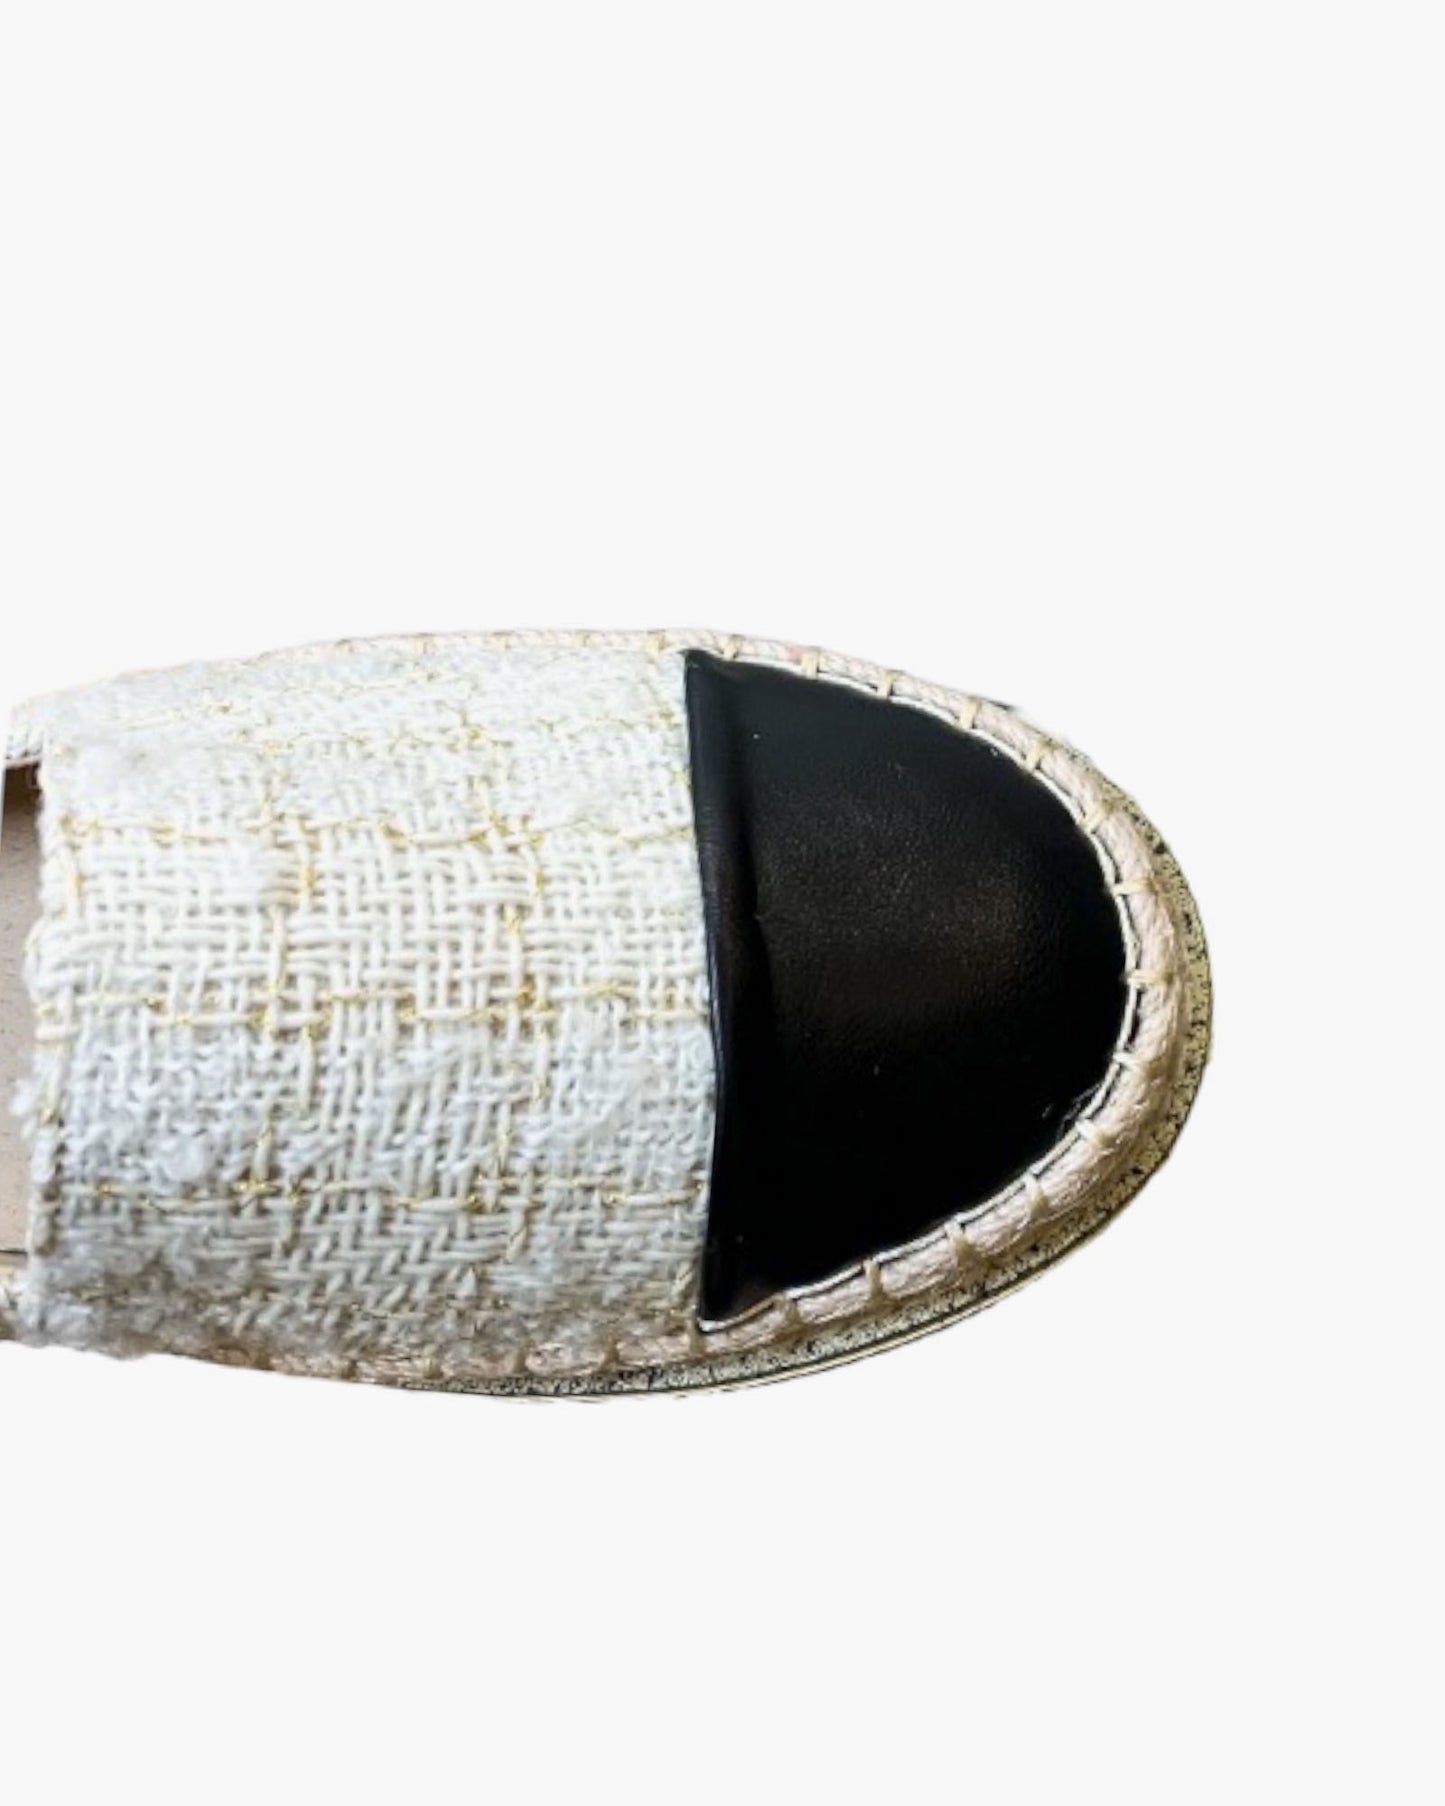 ivory tweed & black PU leather espadrilles *pre-order*